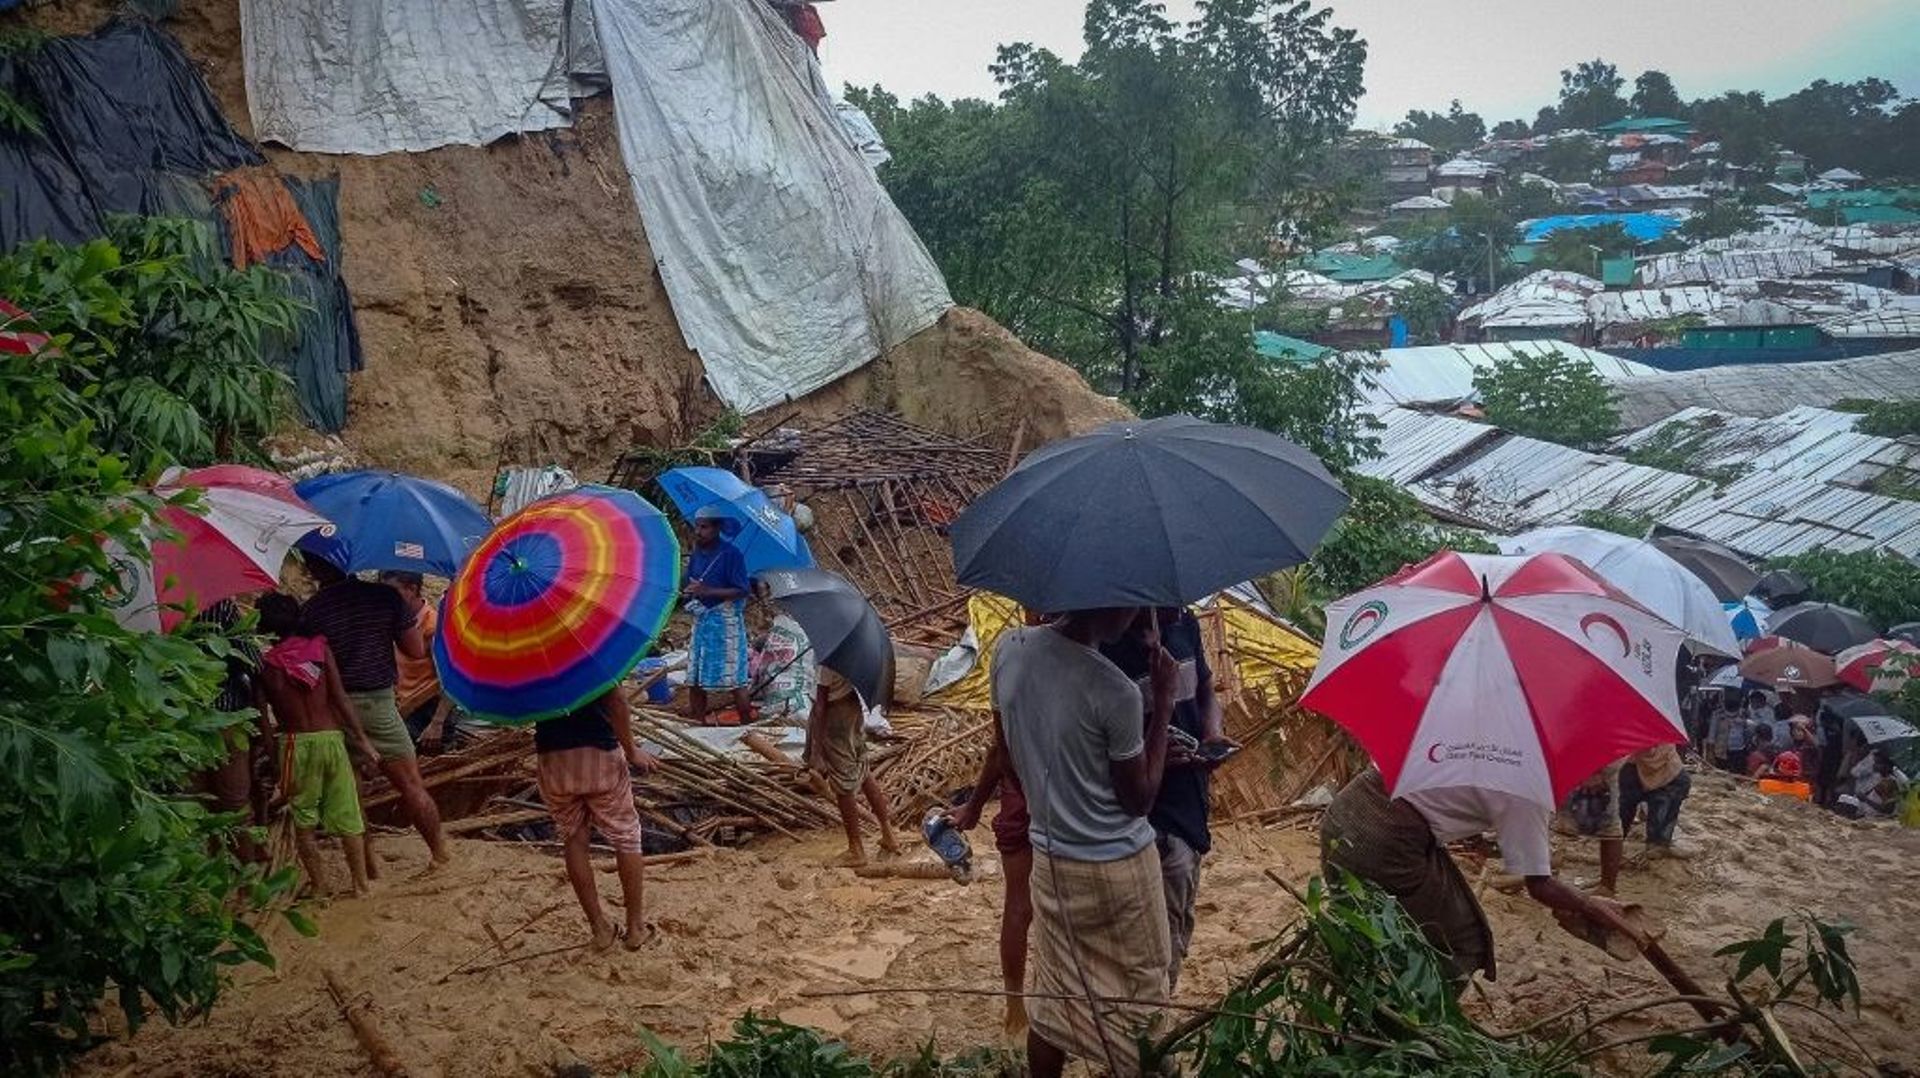 Le camp de réfugiés rohingyas Balukhali au Bangladesh, endommagé par la mousson, le 27 juillet 2021